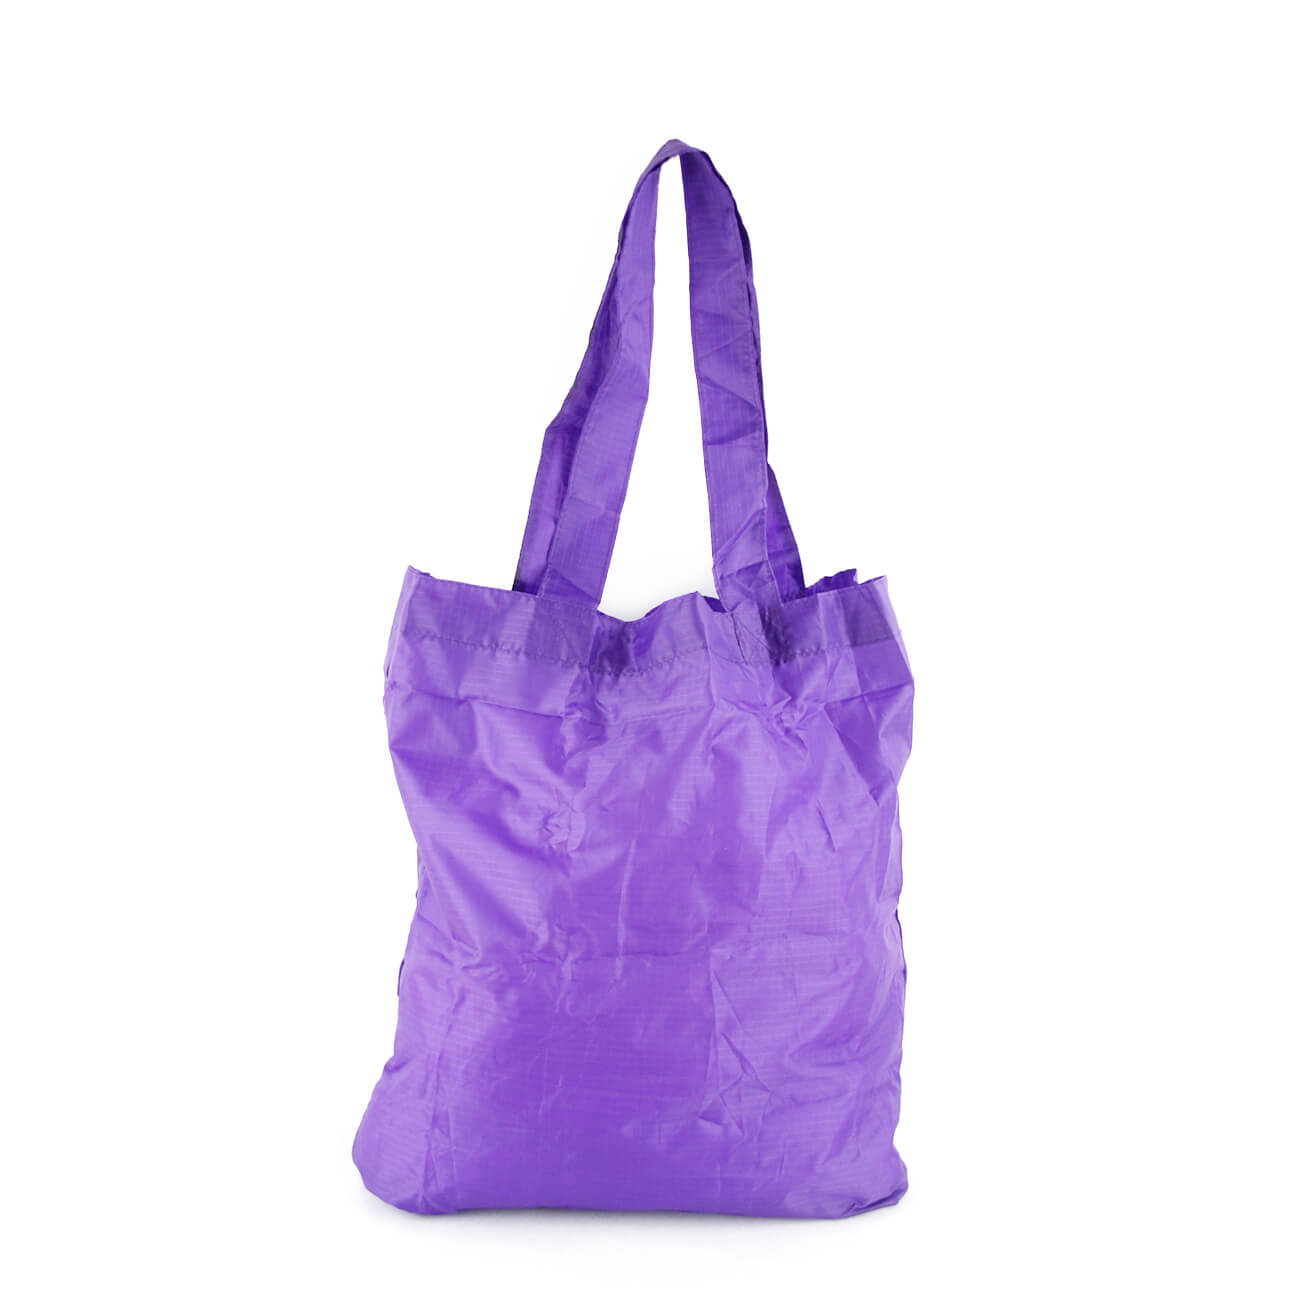 Reusable Shopper Bags